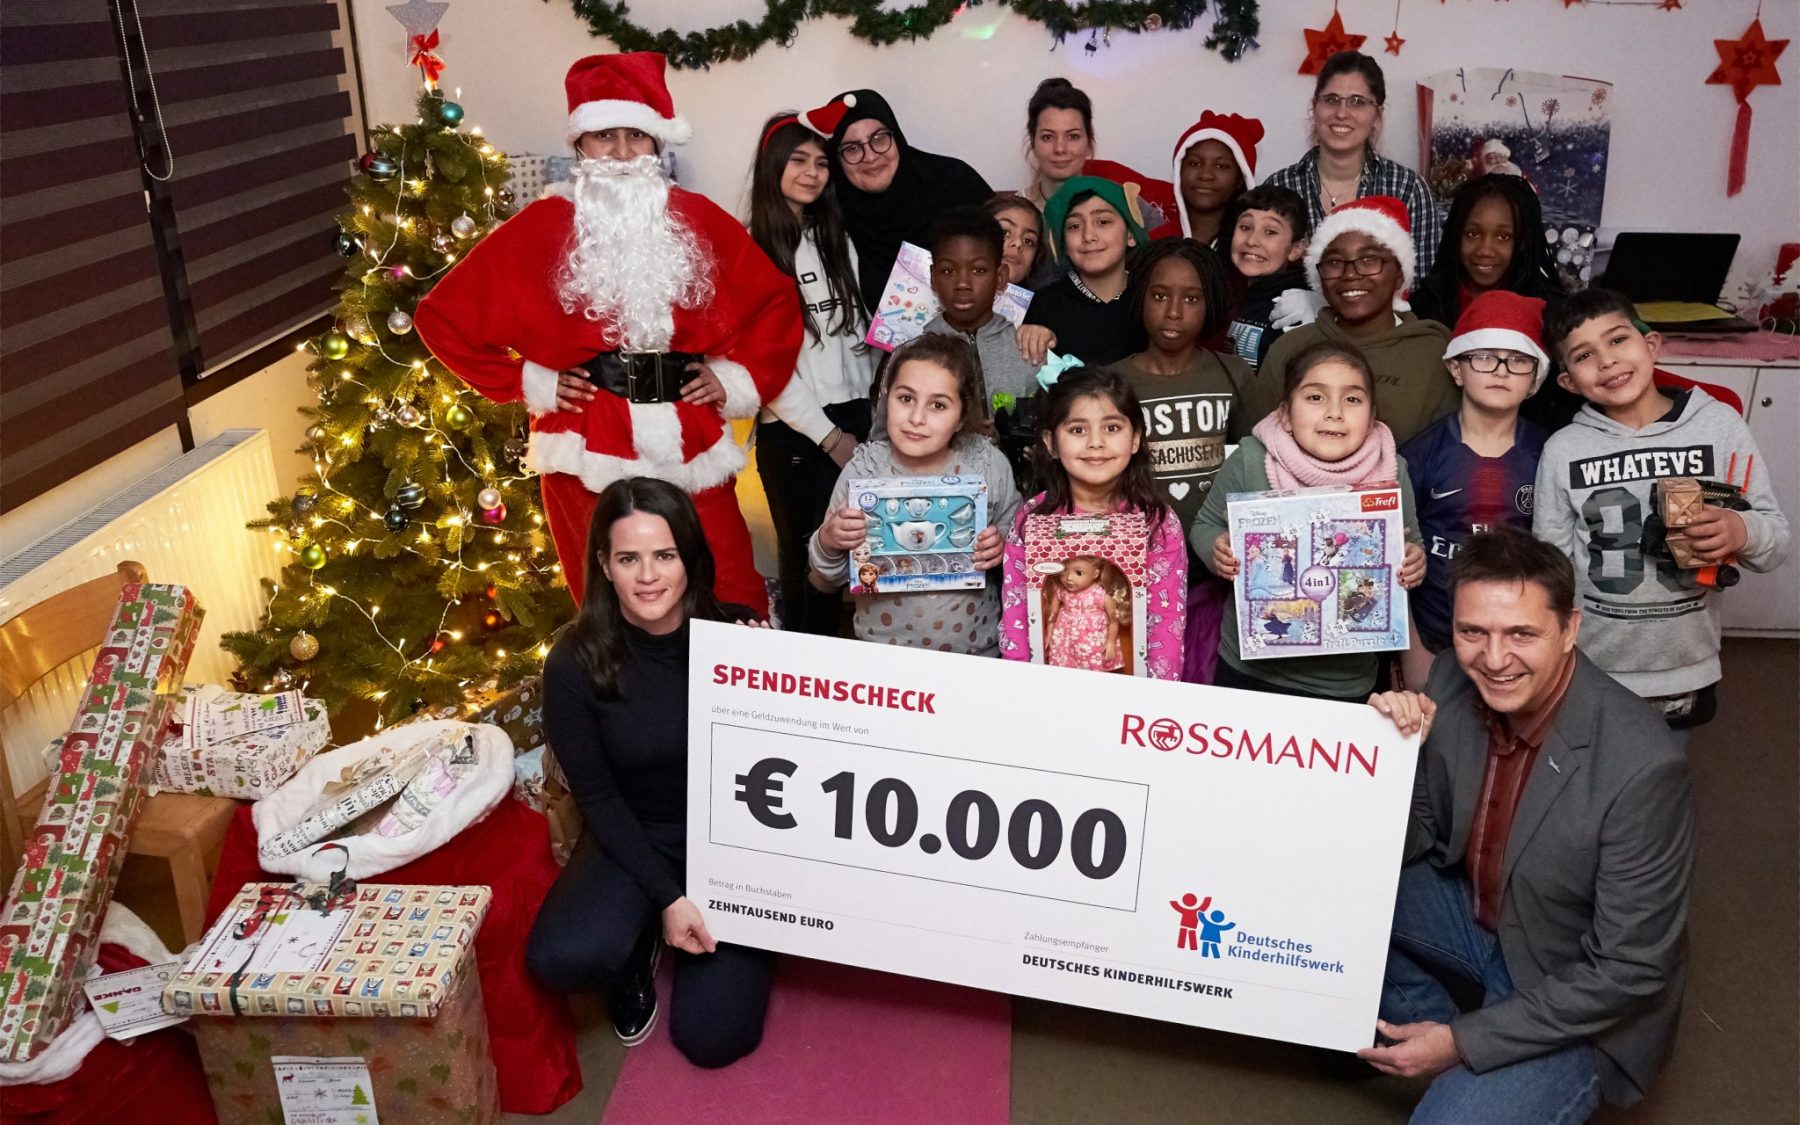 Firma Rossmann Unterstutzt Deutsches Kinderhilfswerk Mit 10 000 Euro Awo Region Hannover